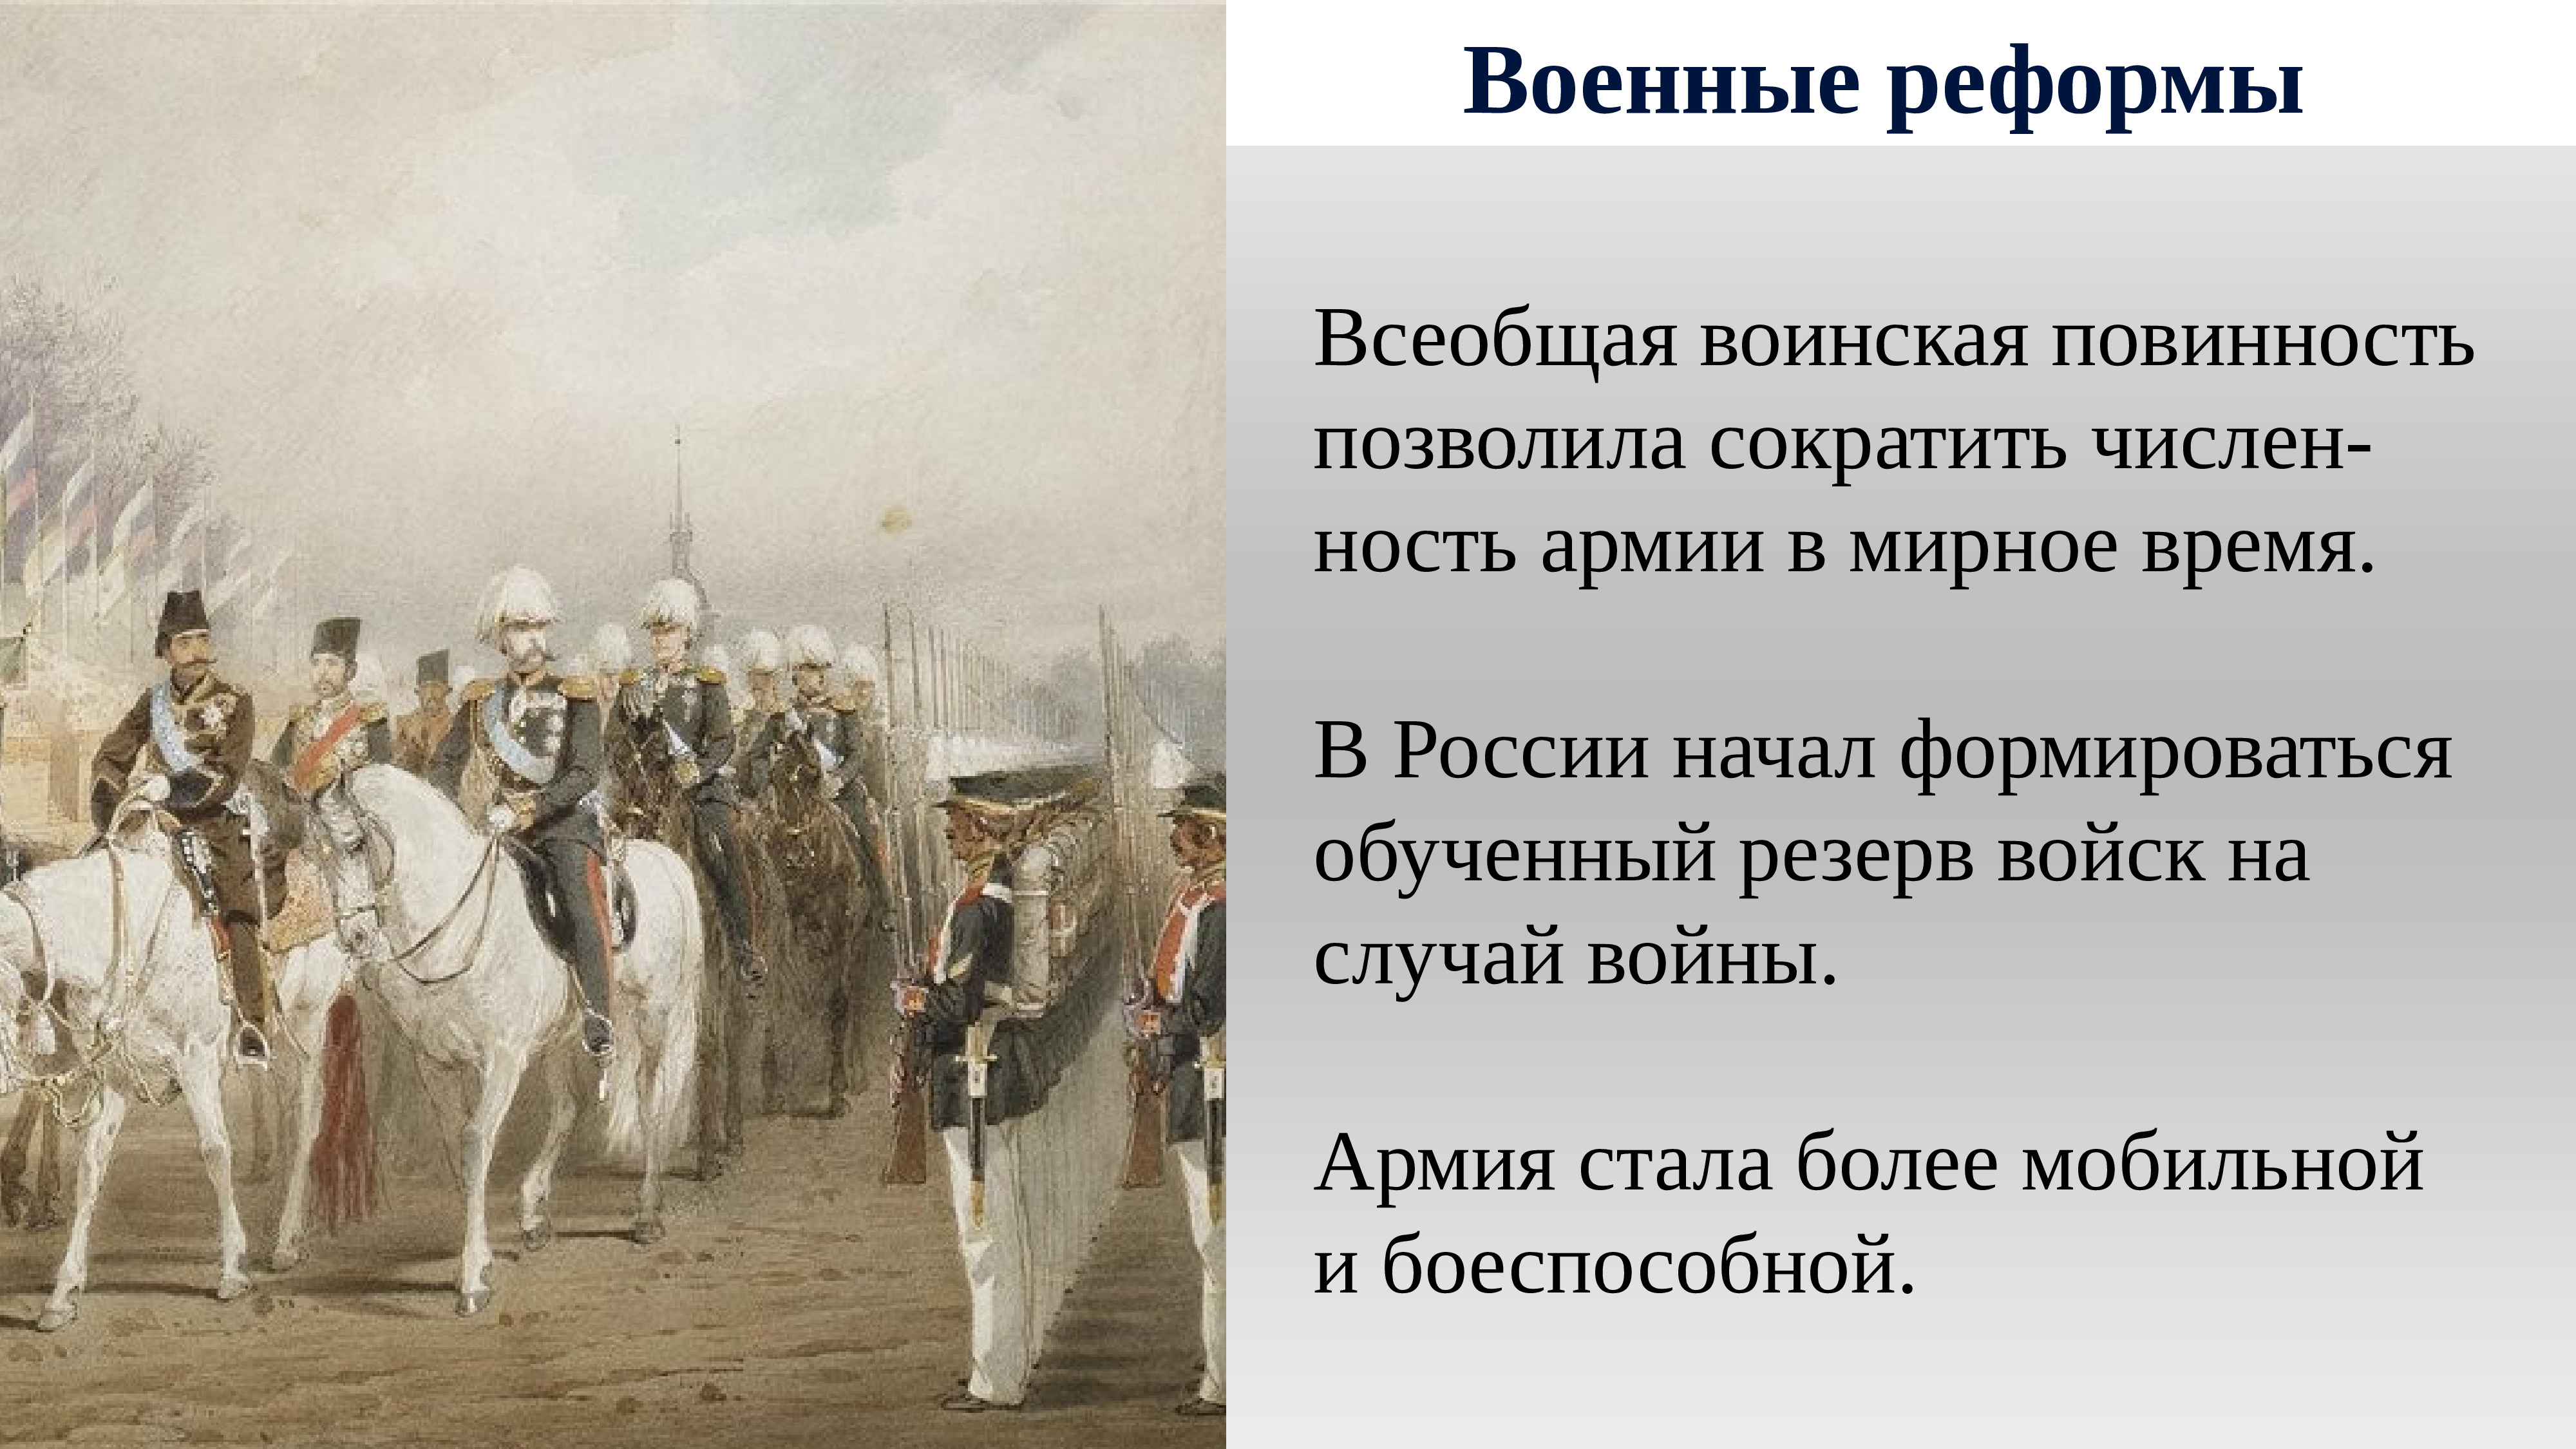 Реформы на кубани в 19 веке. Всеобщая воинская повинность 1874.